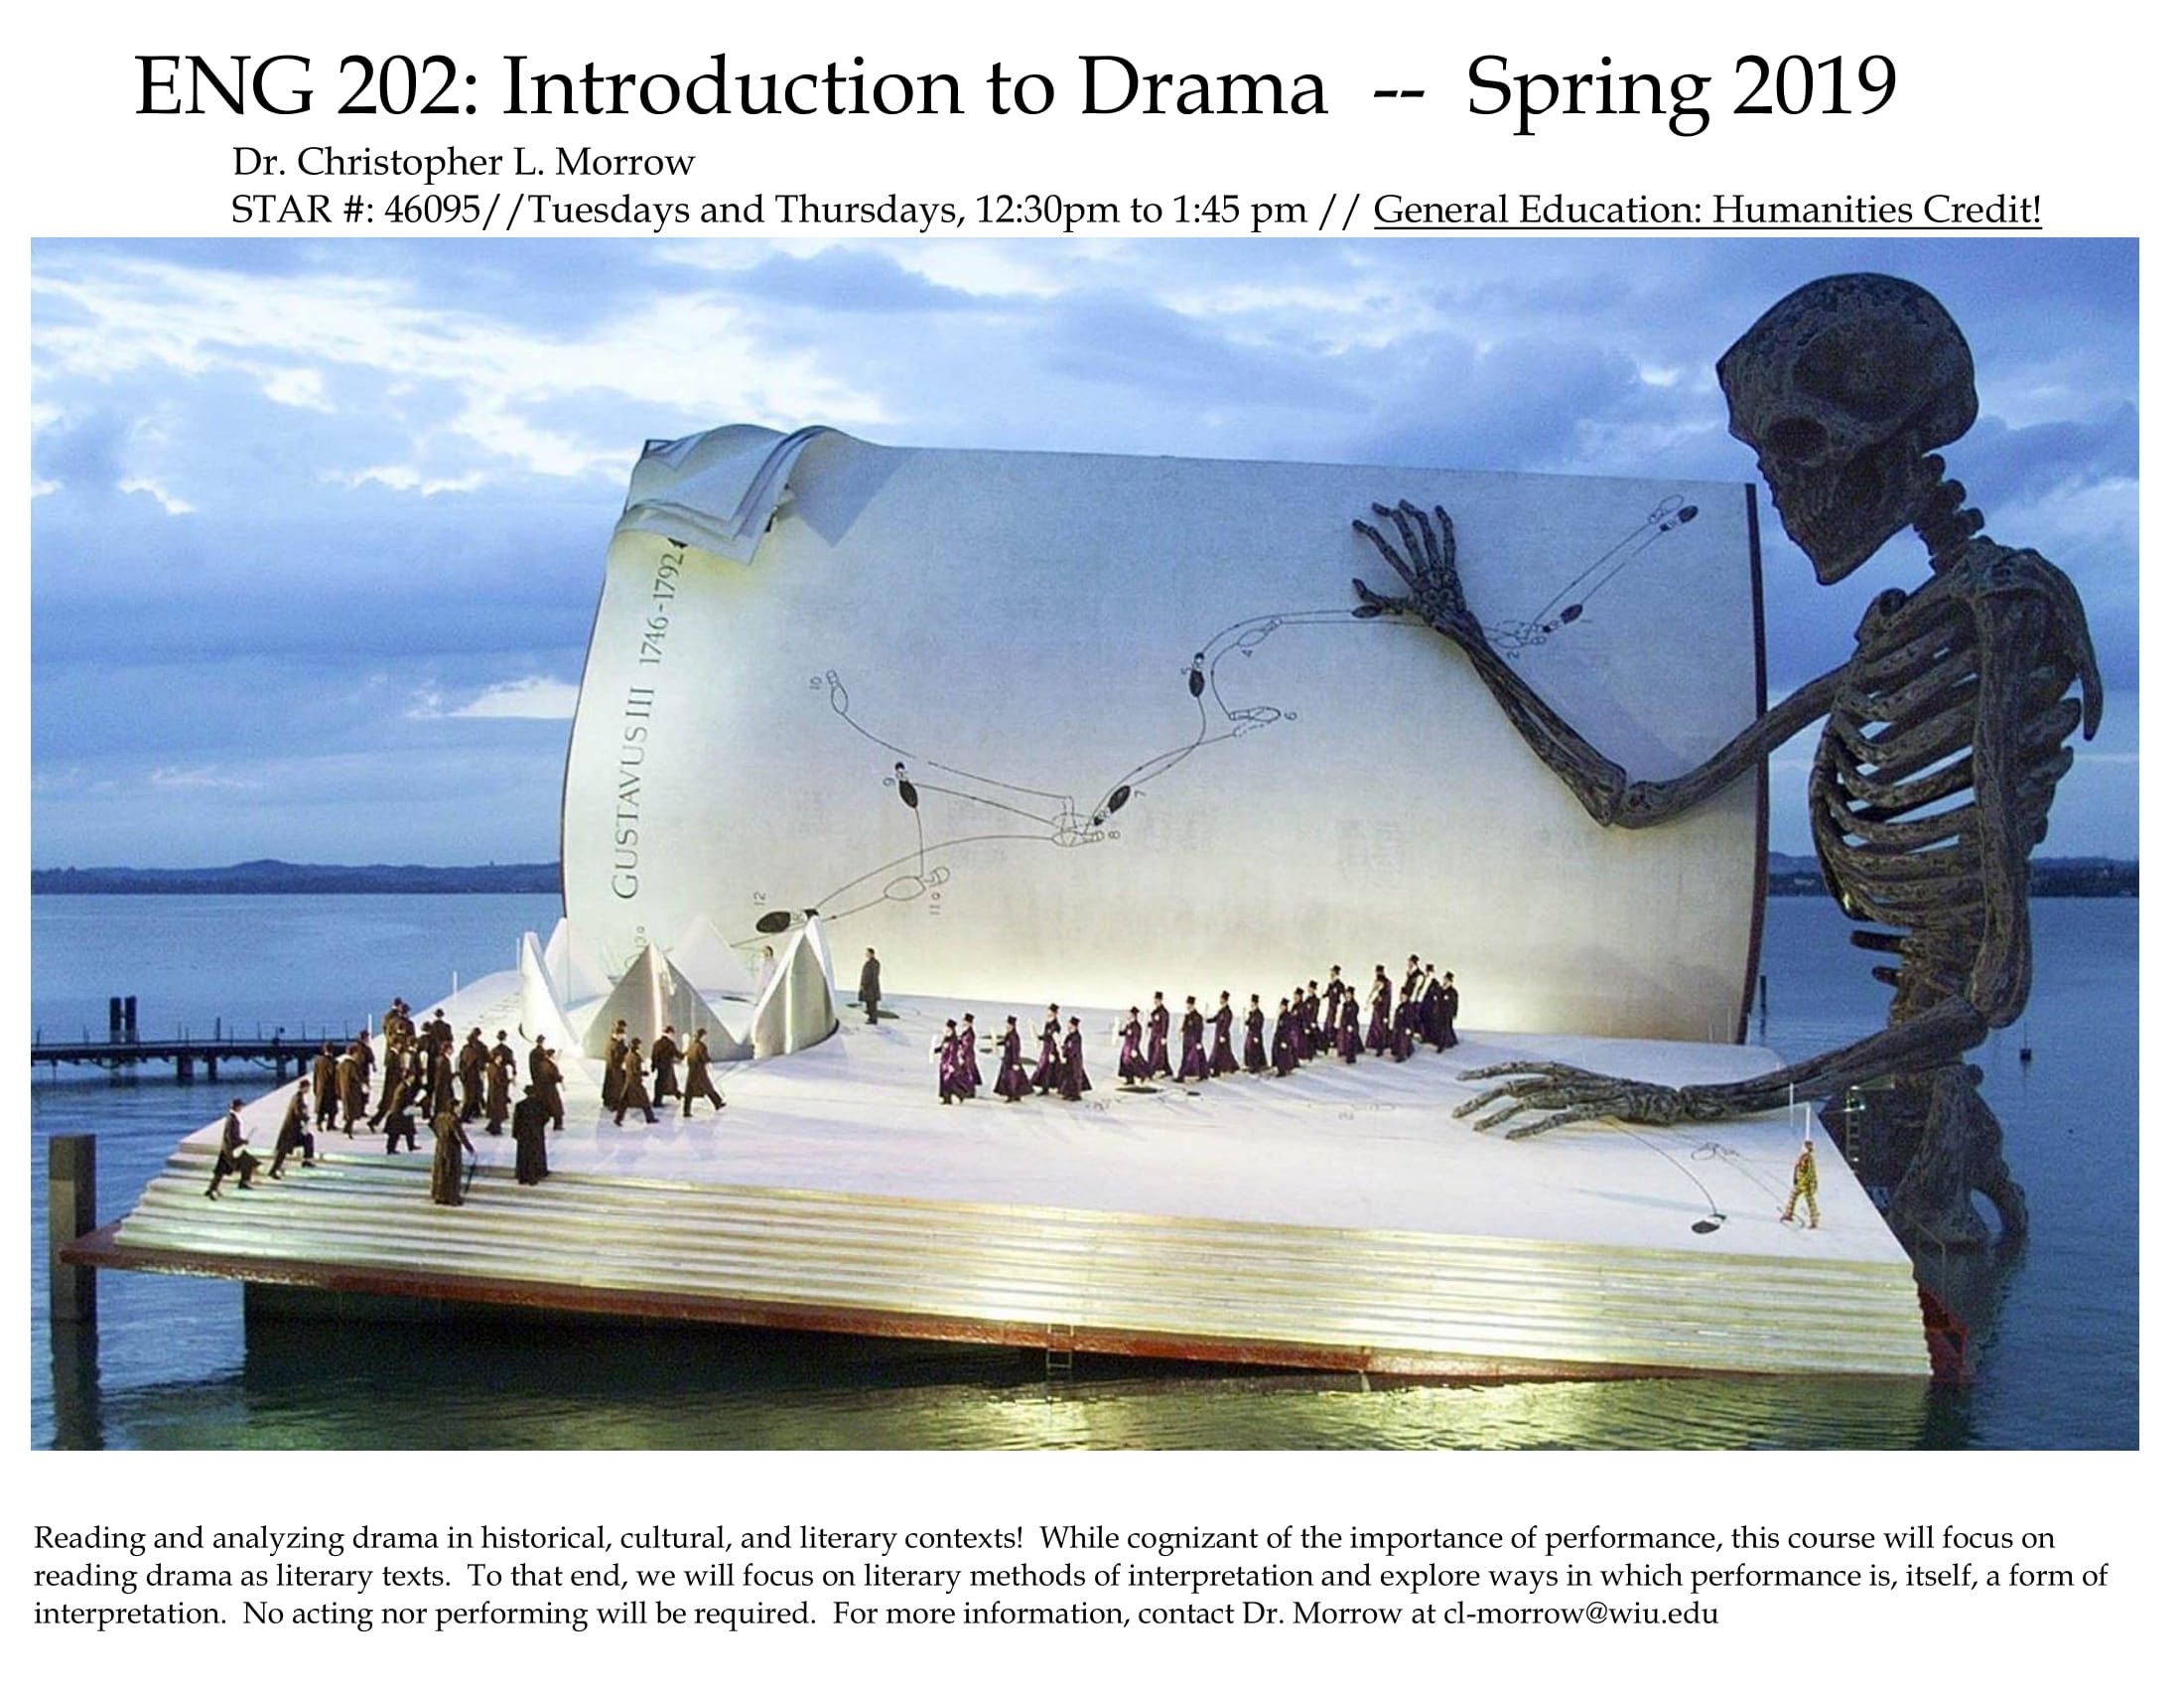 Spring 2019 Course Description